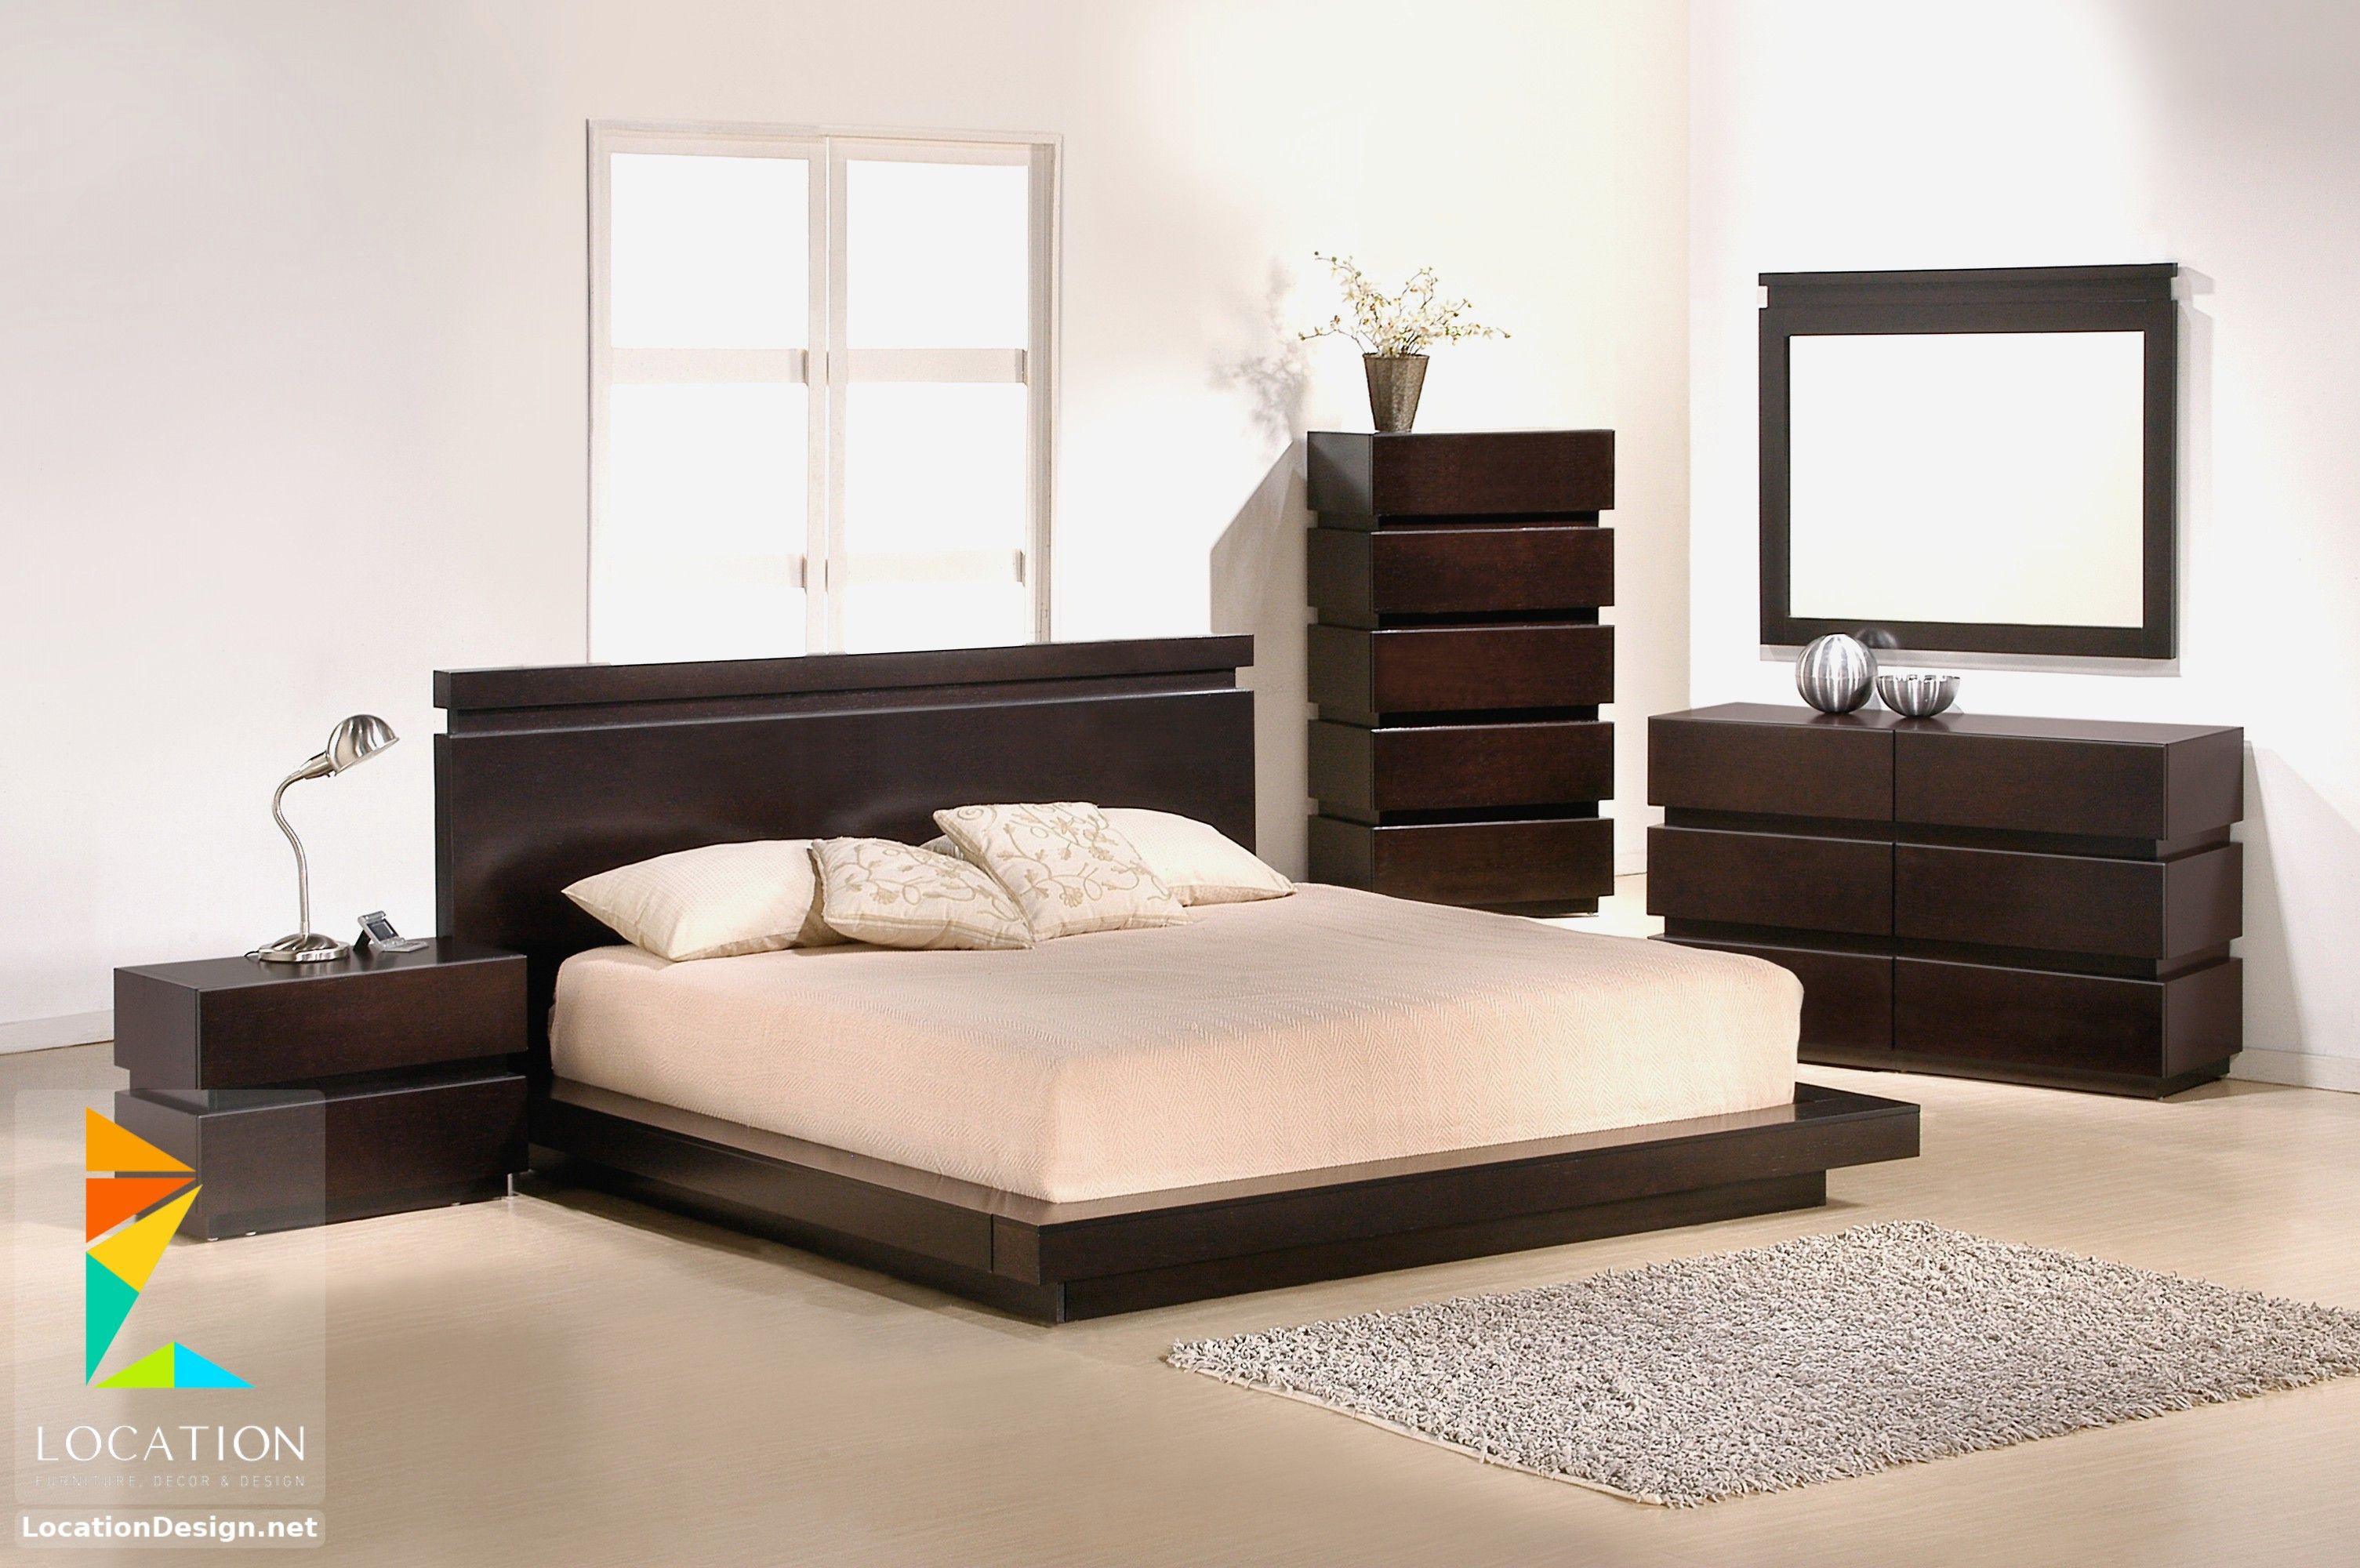 Кровати темного цвета. Design Wood кровать Модерн. Кровать Moira Modern Bed 2. Гарнитур Кинг сайз спальный черный цвет. Кровать Модерн венге.